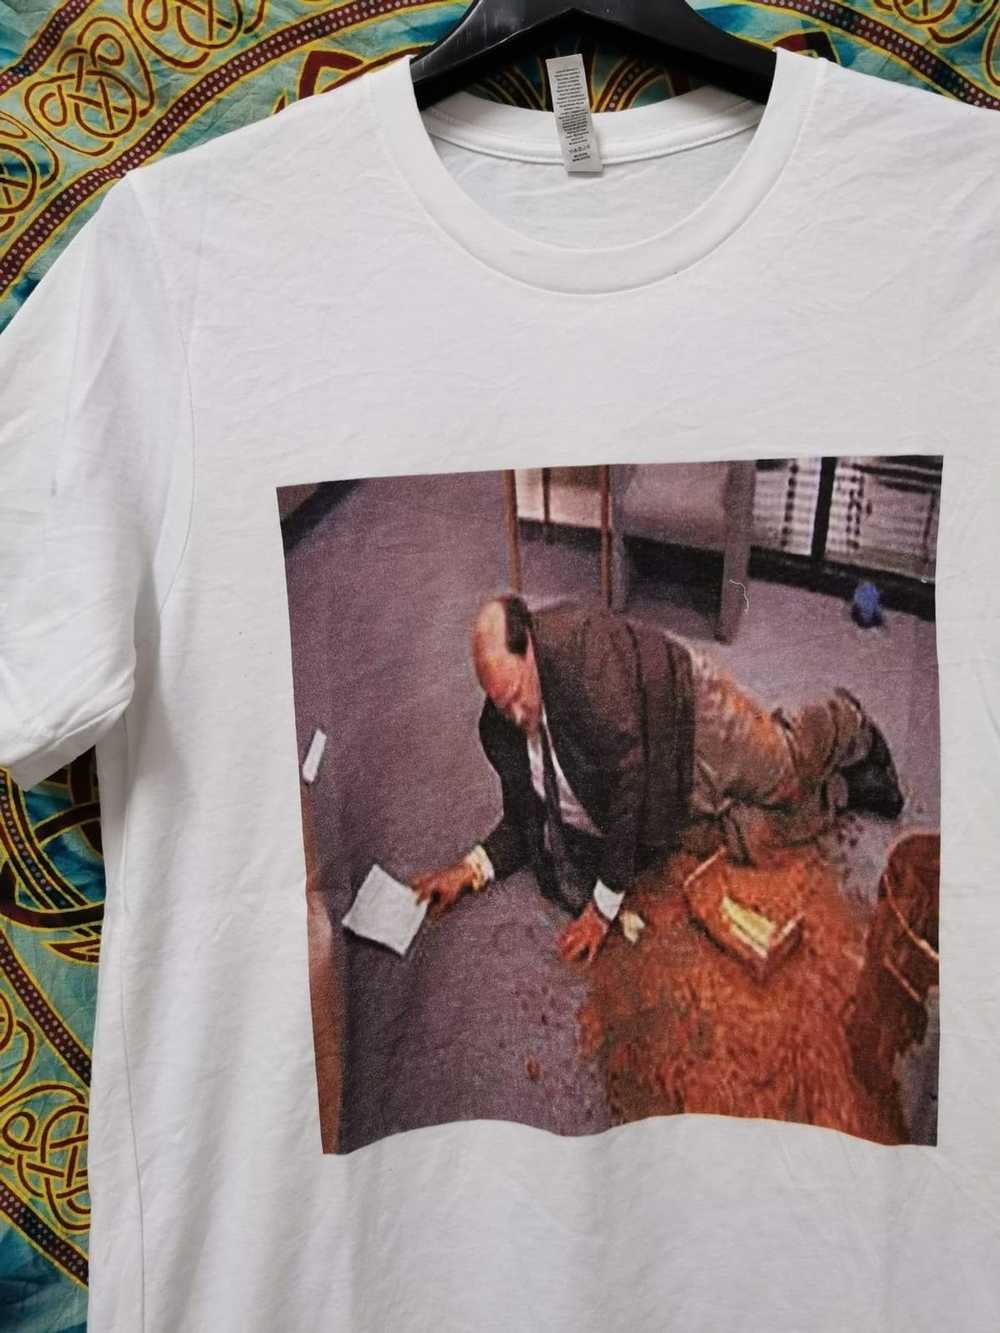 Band Tees × Movie × Streetwear Poop man T-shirt - image 1